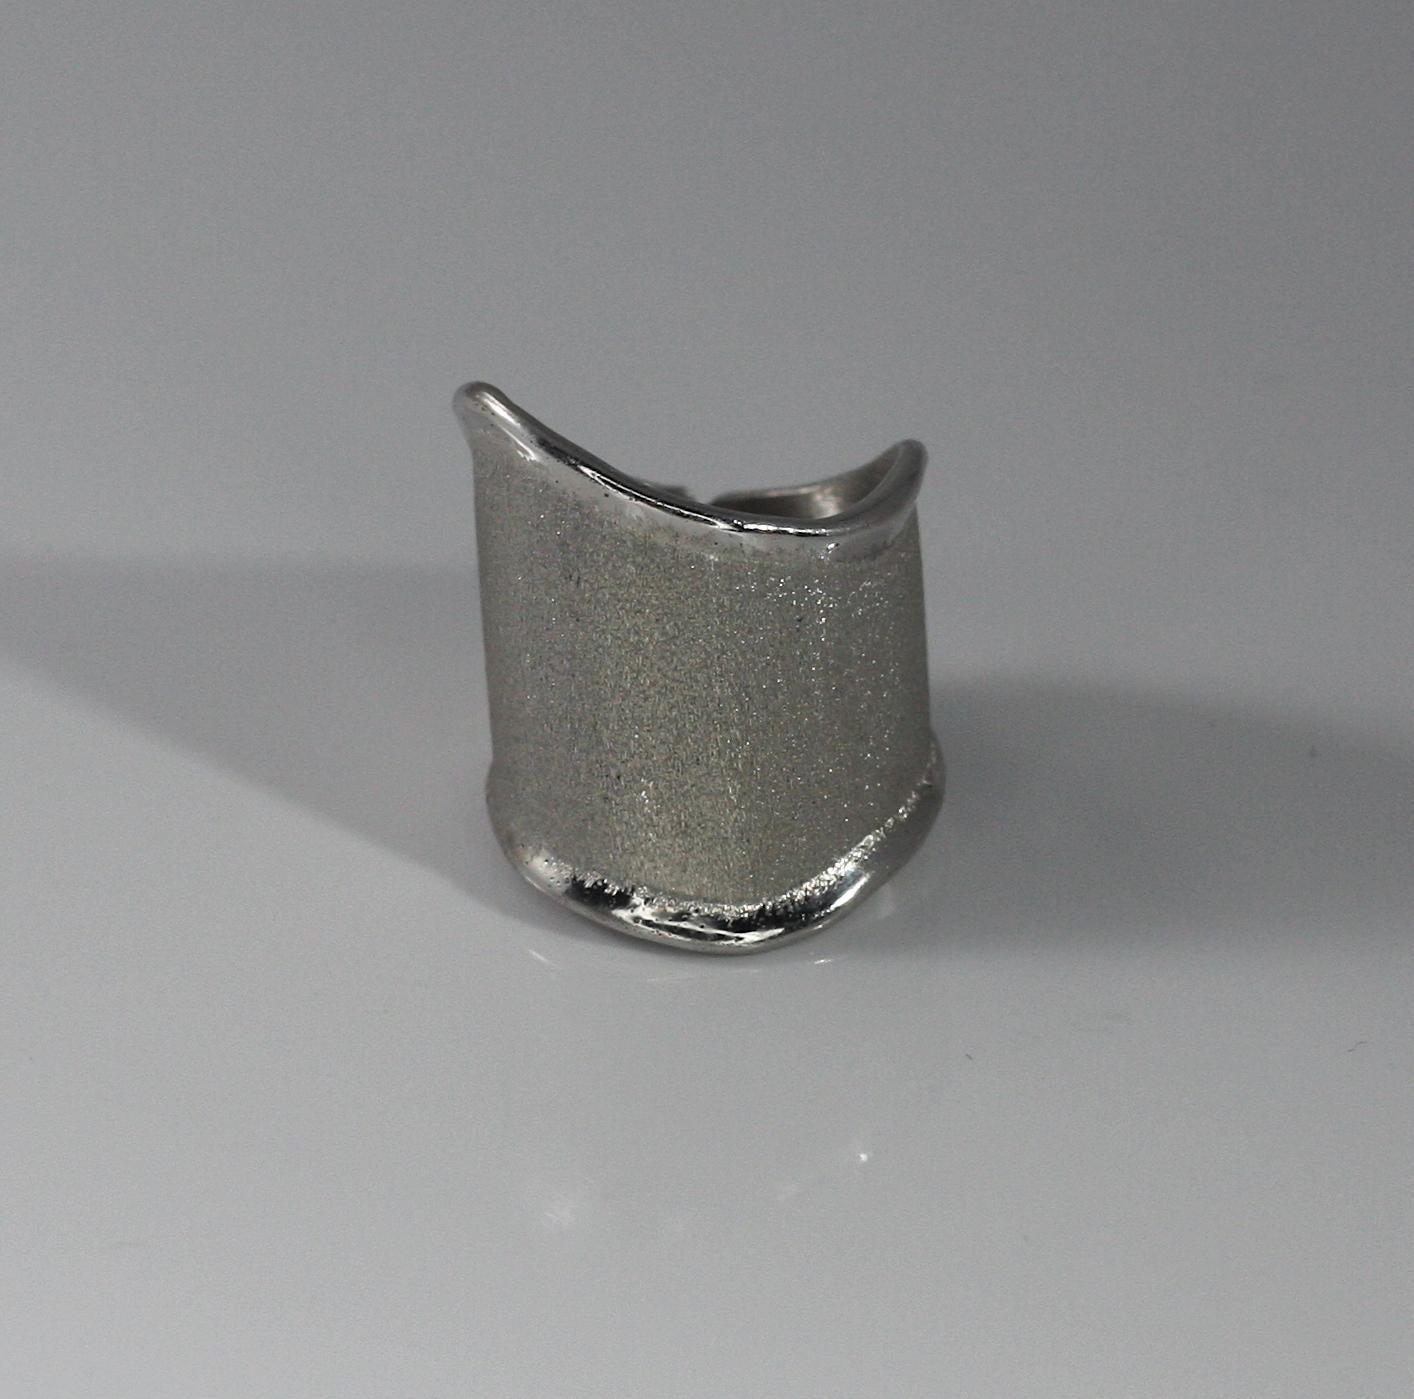 Yianni Creations Ammos Collection handgefertigter Ring aus feinem Silber 950 Reinheit mit Palladium überzogen, um den Elementen zu widerstehen. Der einzigartige Effekt entsteht durch die Kombination von zwei alten Handwerkstechniken. Der gebürstete